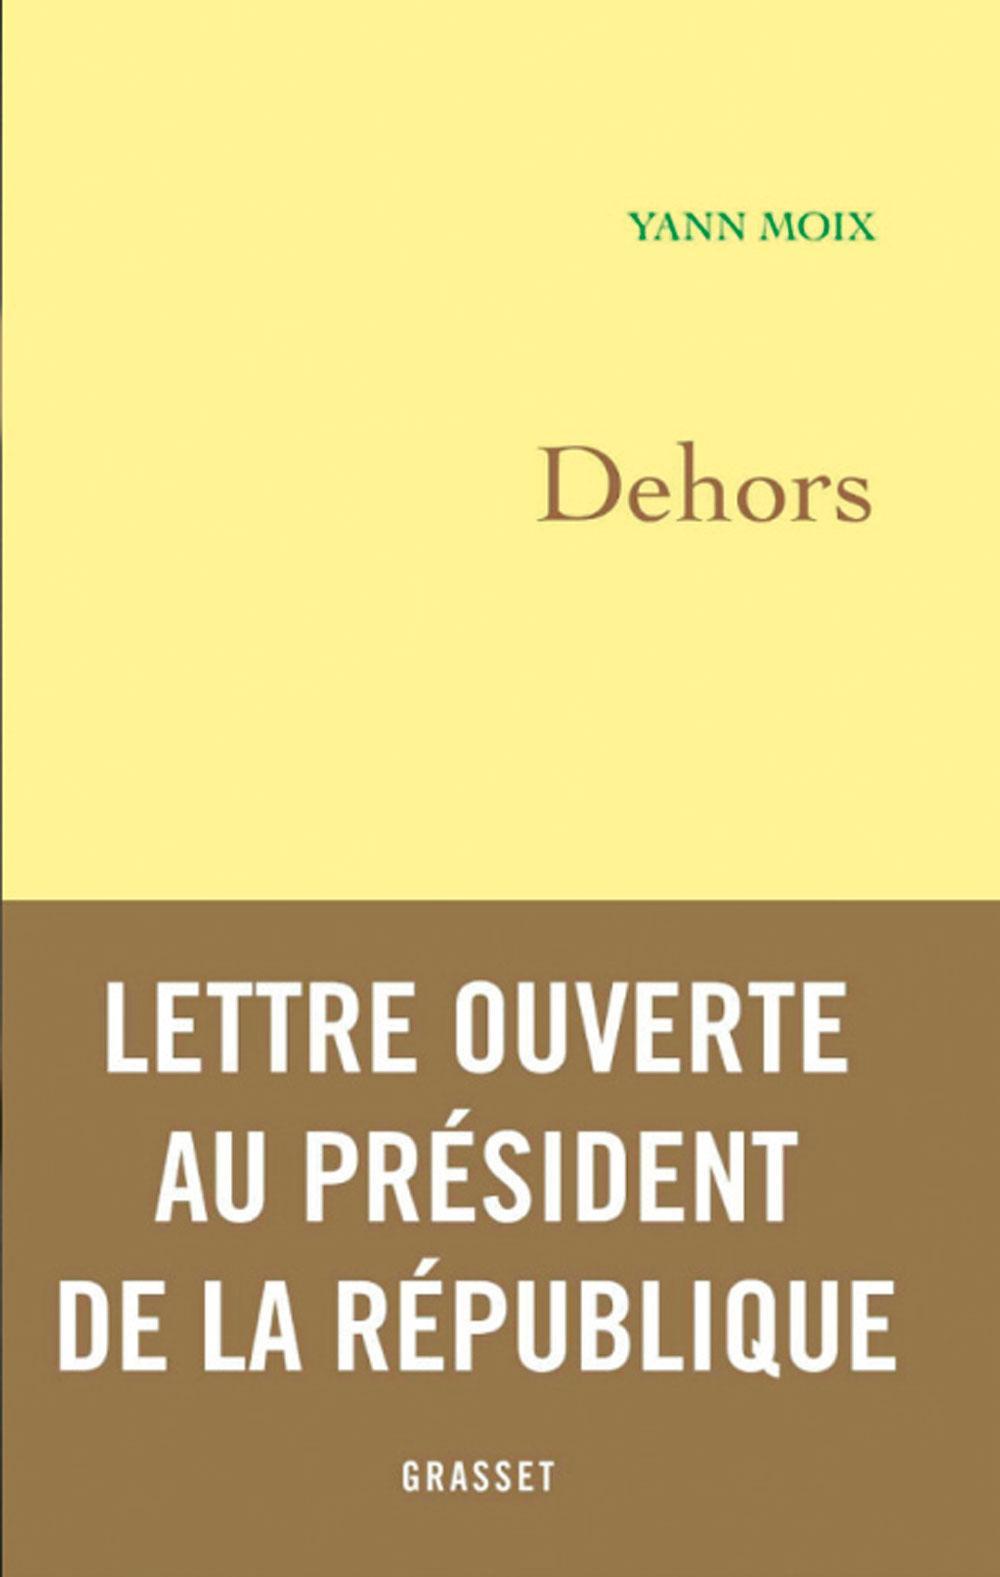 (1) Dehors, par Yann Moix, Grasset, 366 p